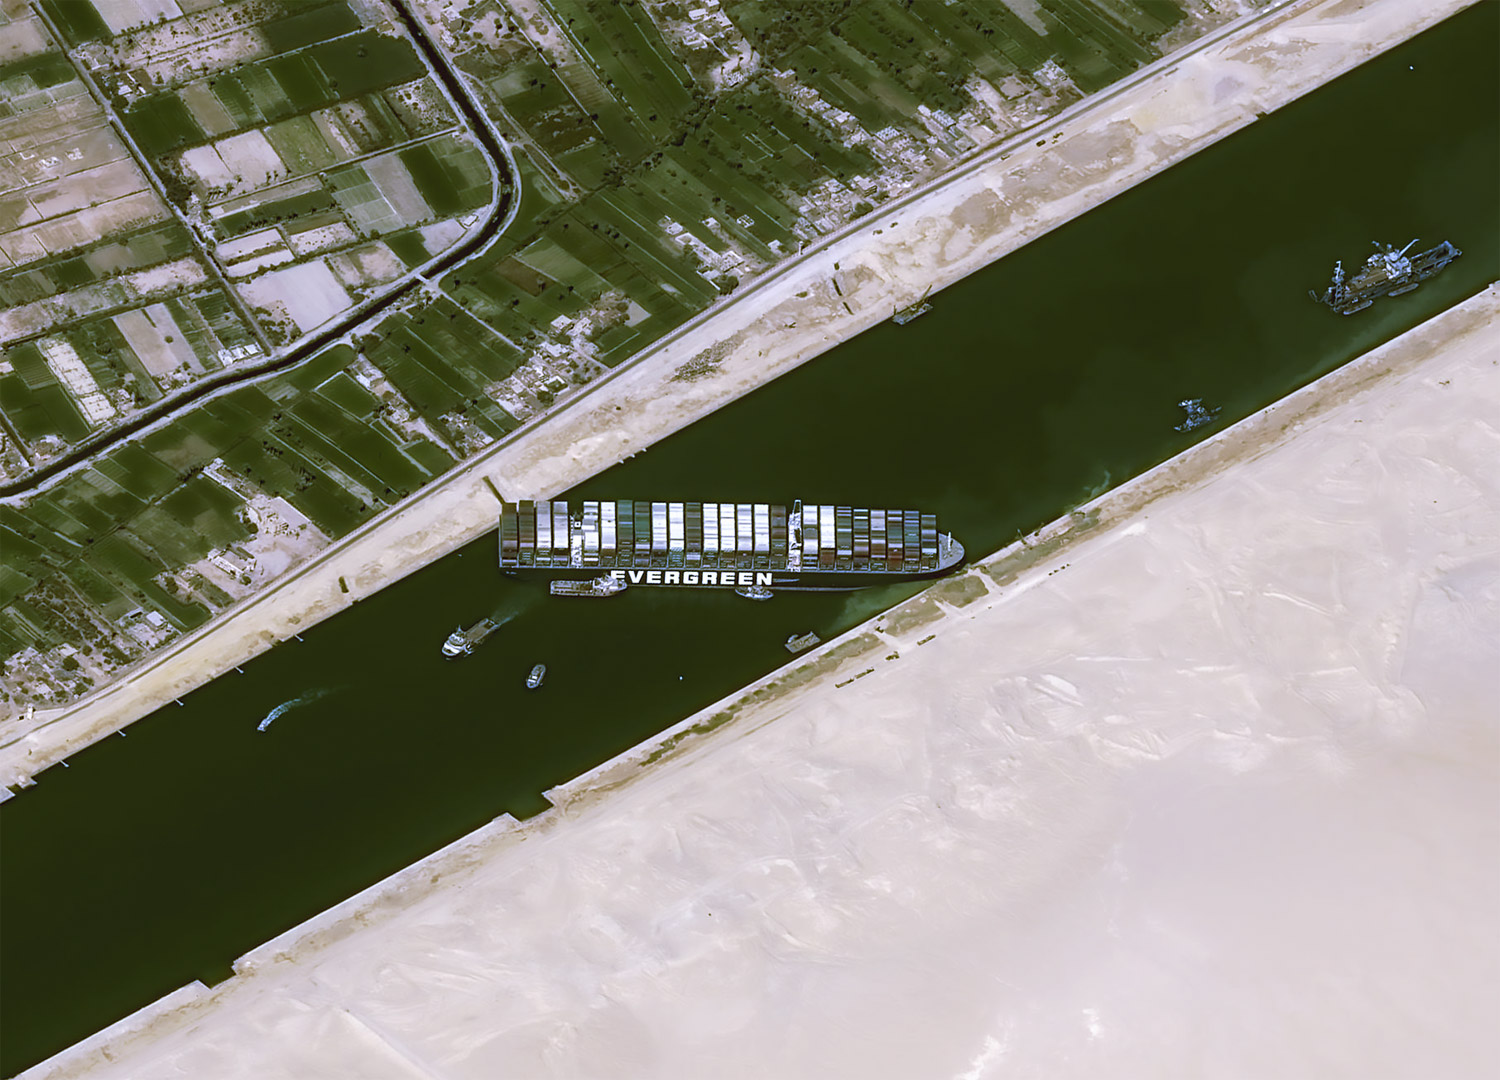 В мире подрожали морские перевозки из-за блокировки Суэцкого канала